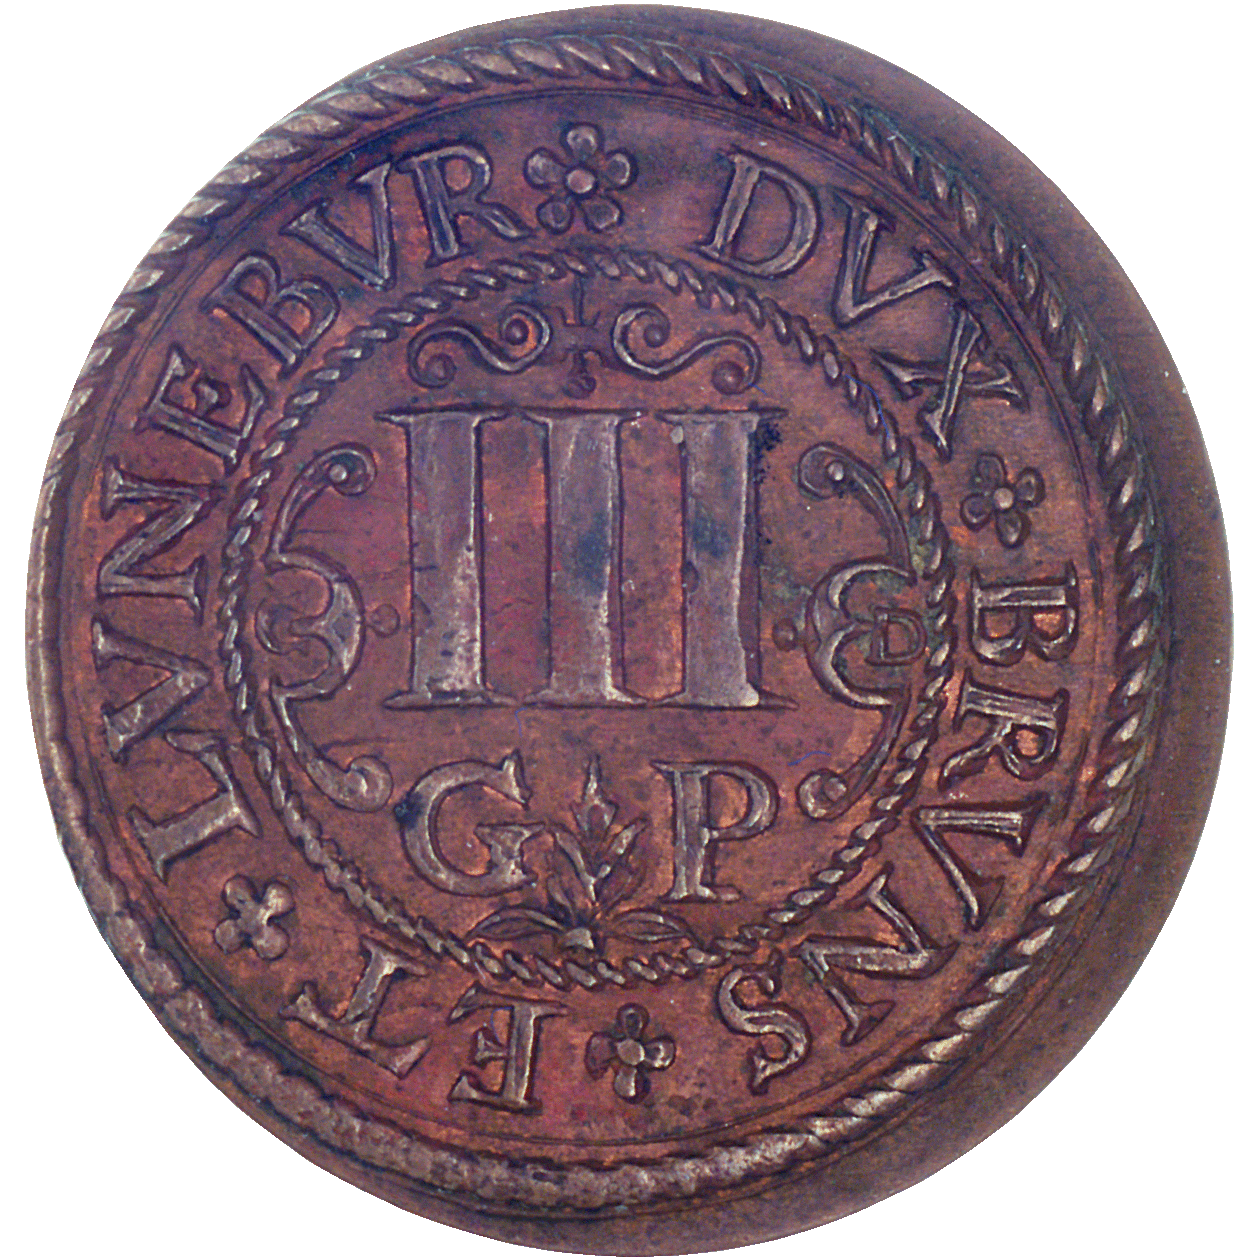 Heiliges Römisches Reich, Herzogtum Lüneburg, Bischof Christian von Braunschweig-Lüneburg, Kipper-Dreigutepfennig (reverse)